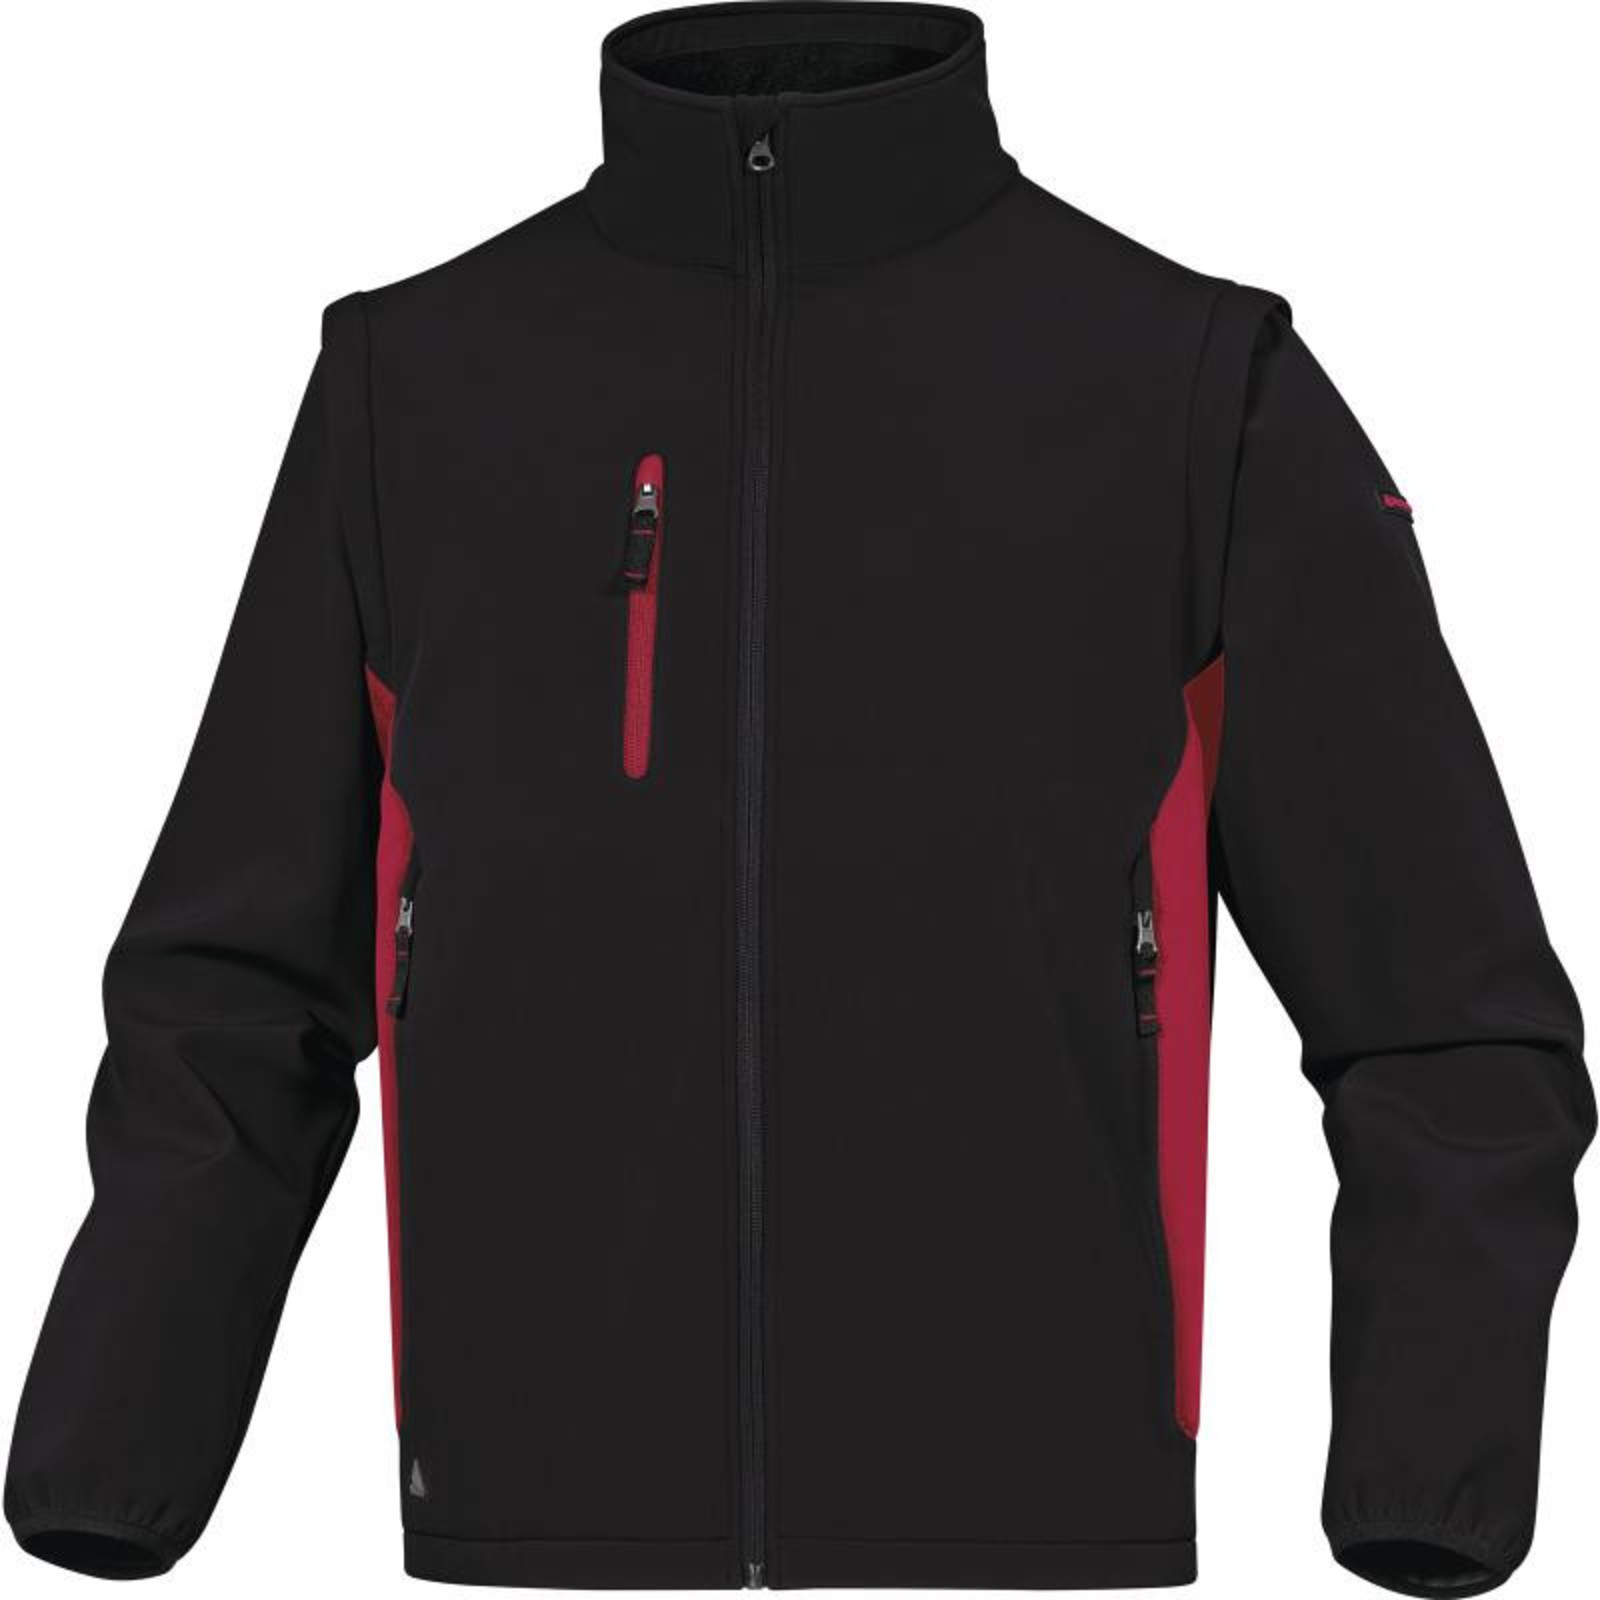 Softshellová bunda Delta Plus Mysen2 2v1 - veľkosť: XXL, farba: čierna/červená